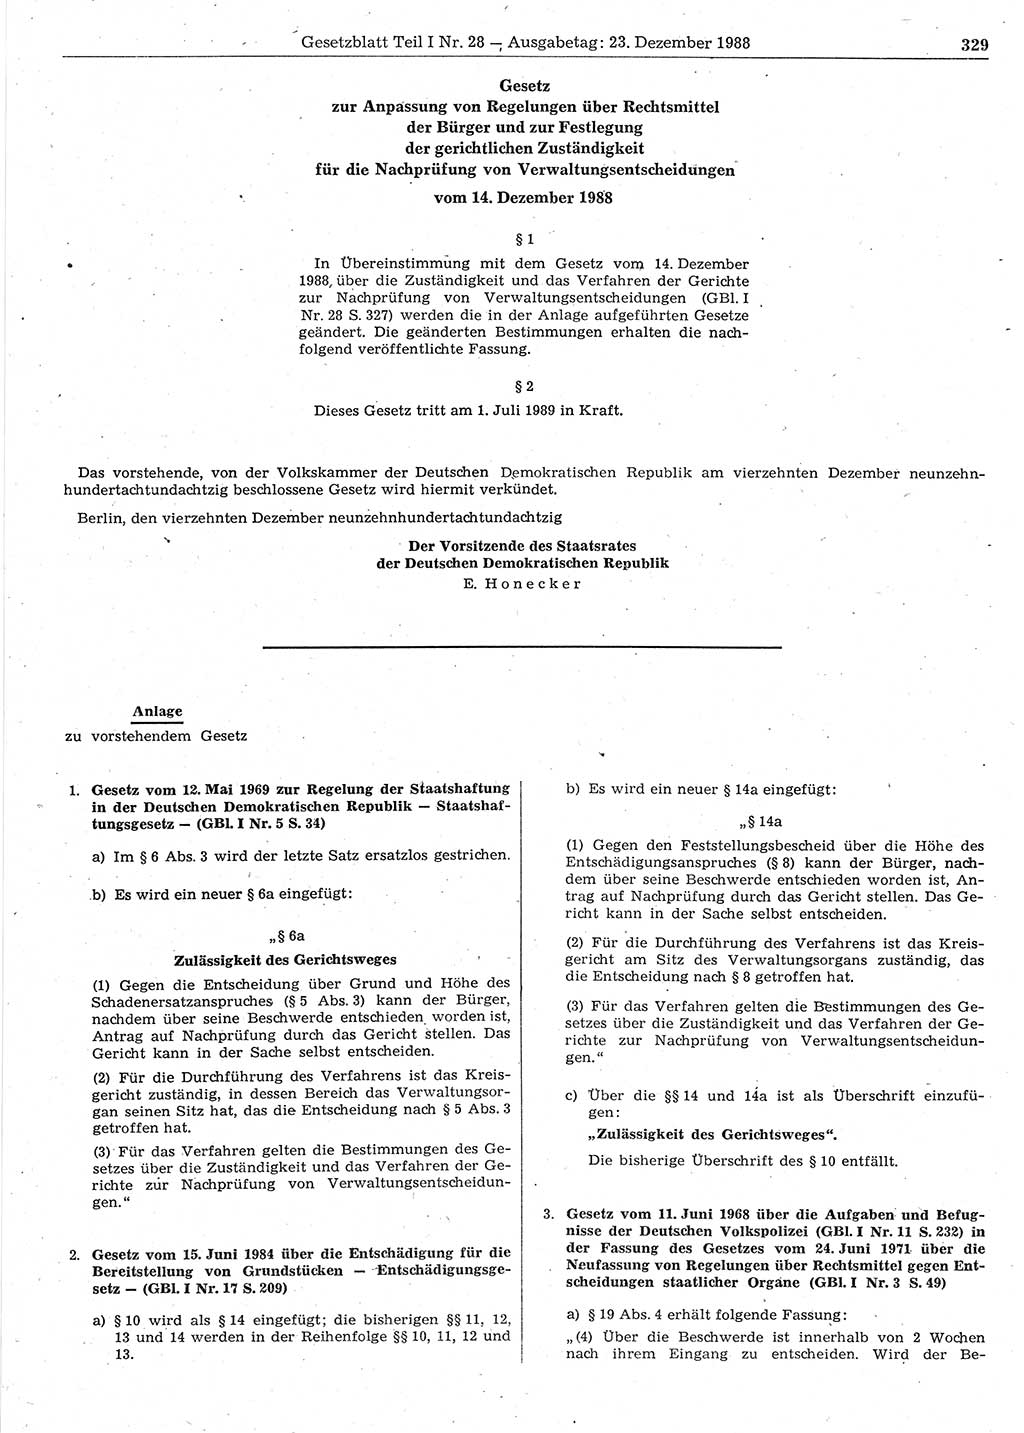 Gesetzblatt (GBl.) der Deutschen Demokratischen Republik (DDR) Teil Ⅰ 1988, Seite 329 (GBl. DDR Ⅰ 1988, S. 329)